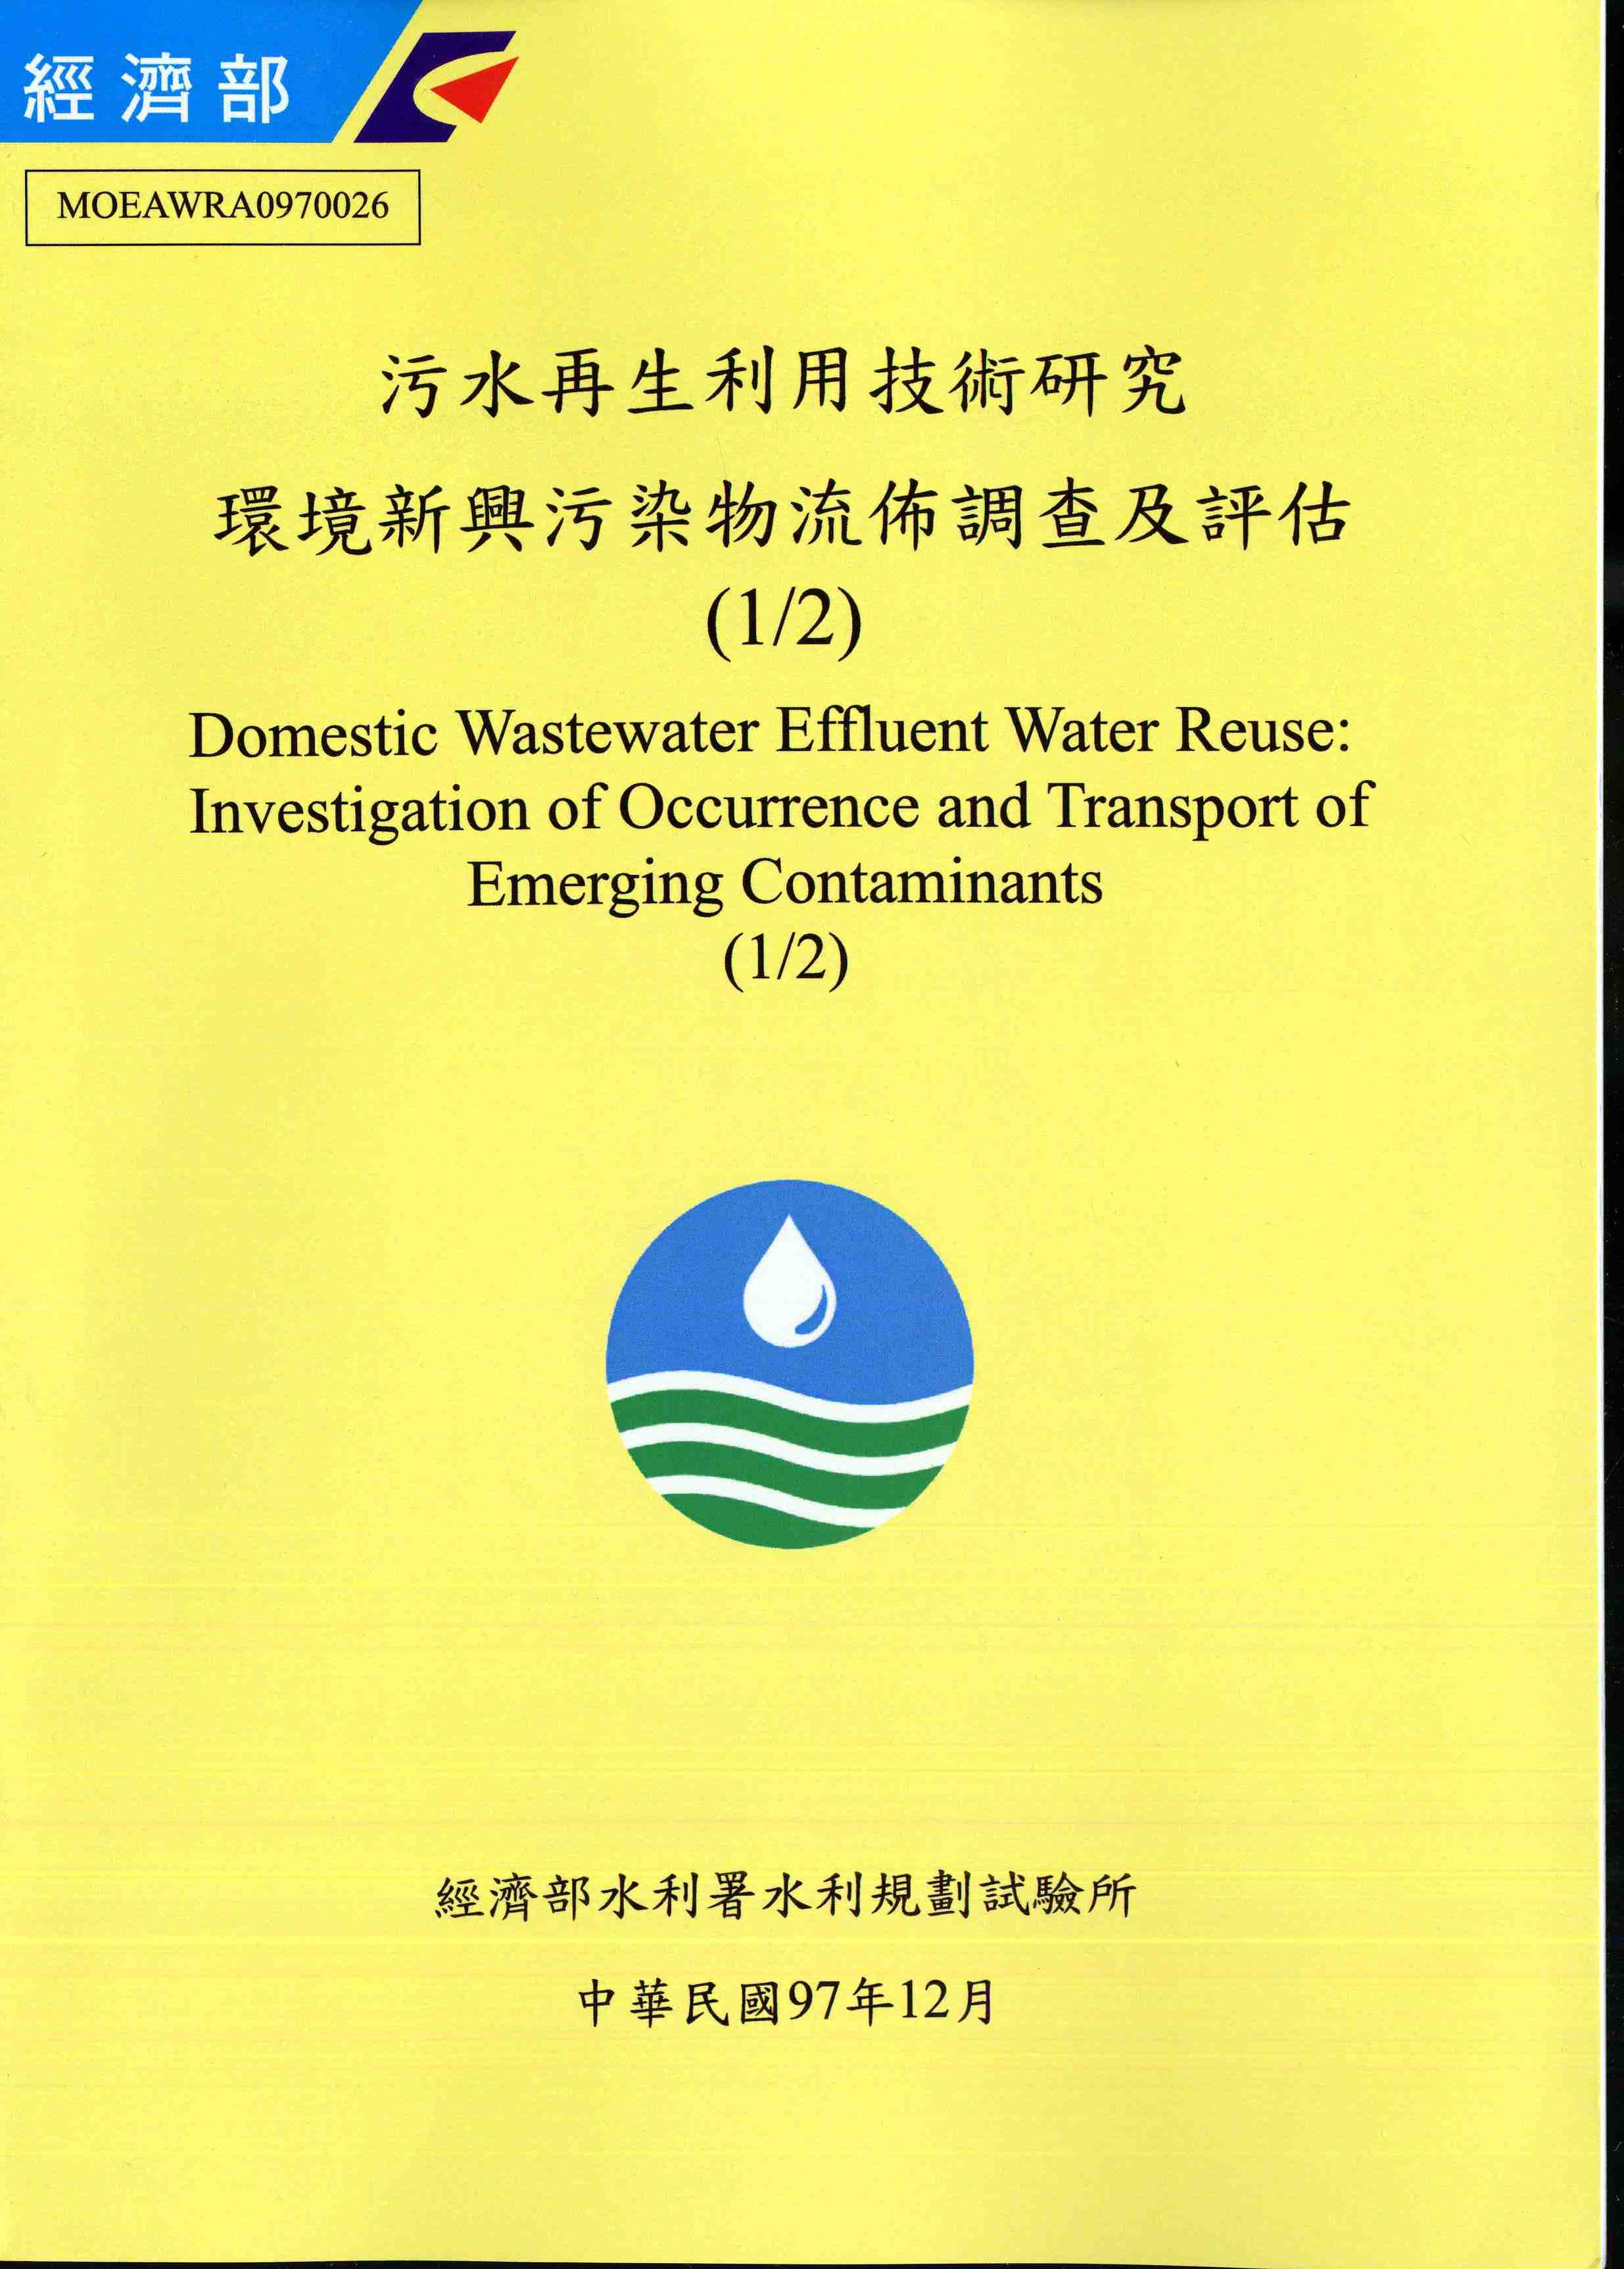 污水再生利用技術研究環境新興污染物流佈調查及評估(1/2)